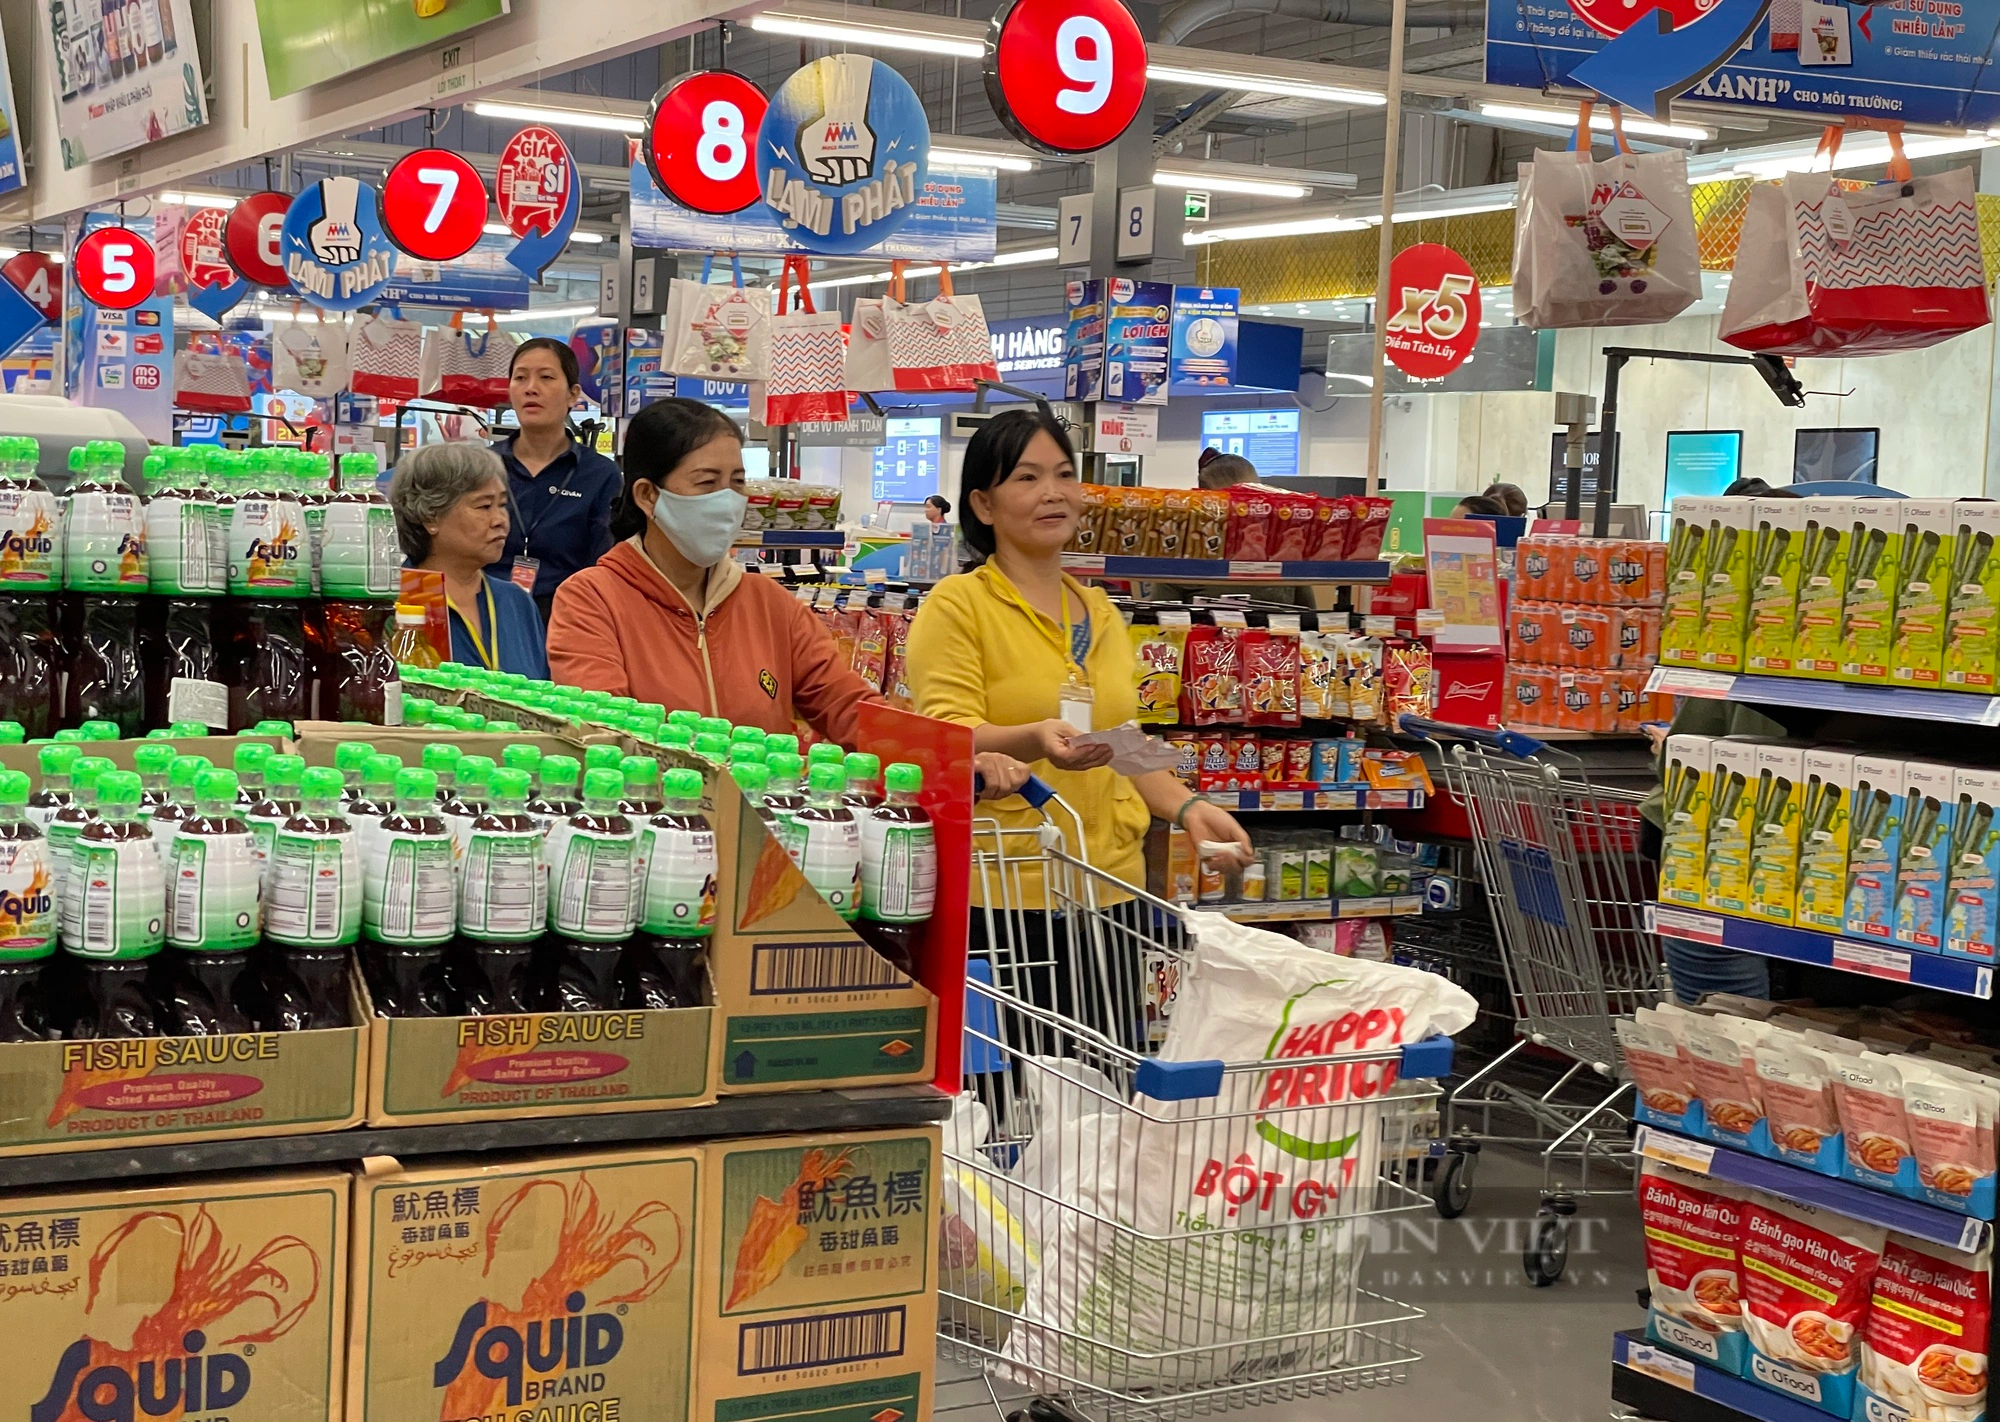 1 đại gia bán lẻ Thái Lan tiết lộ đã nắm 18% thị phần, sẽ thần tốc mở thêm 38 siêu thị mới - Ảnh 1.